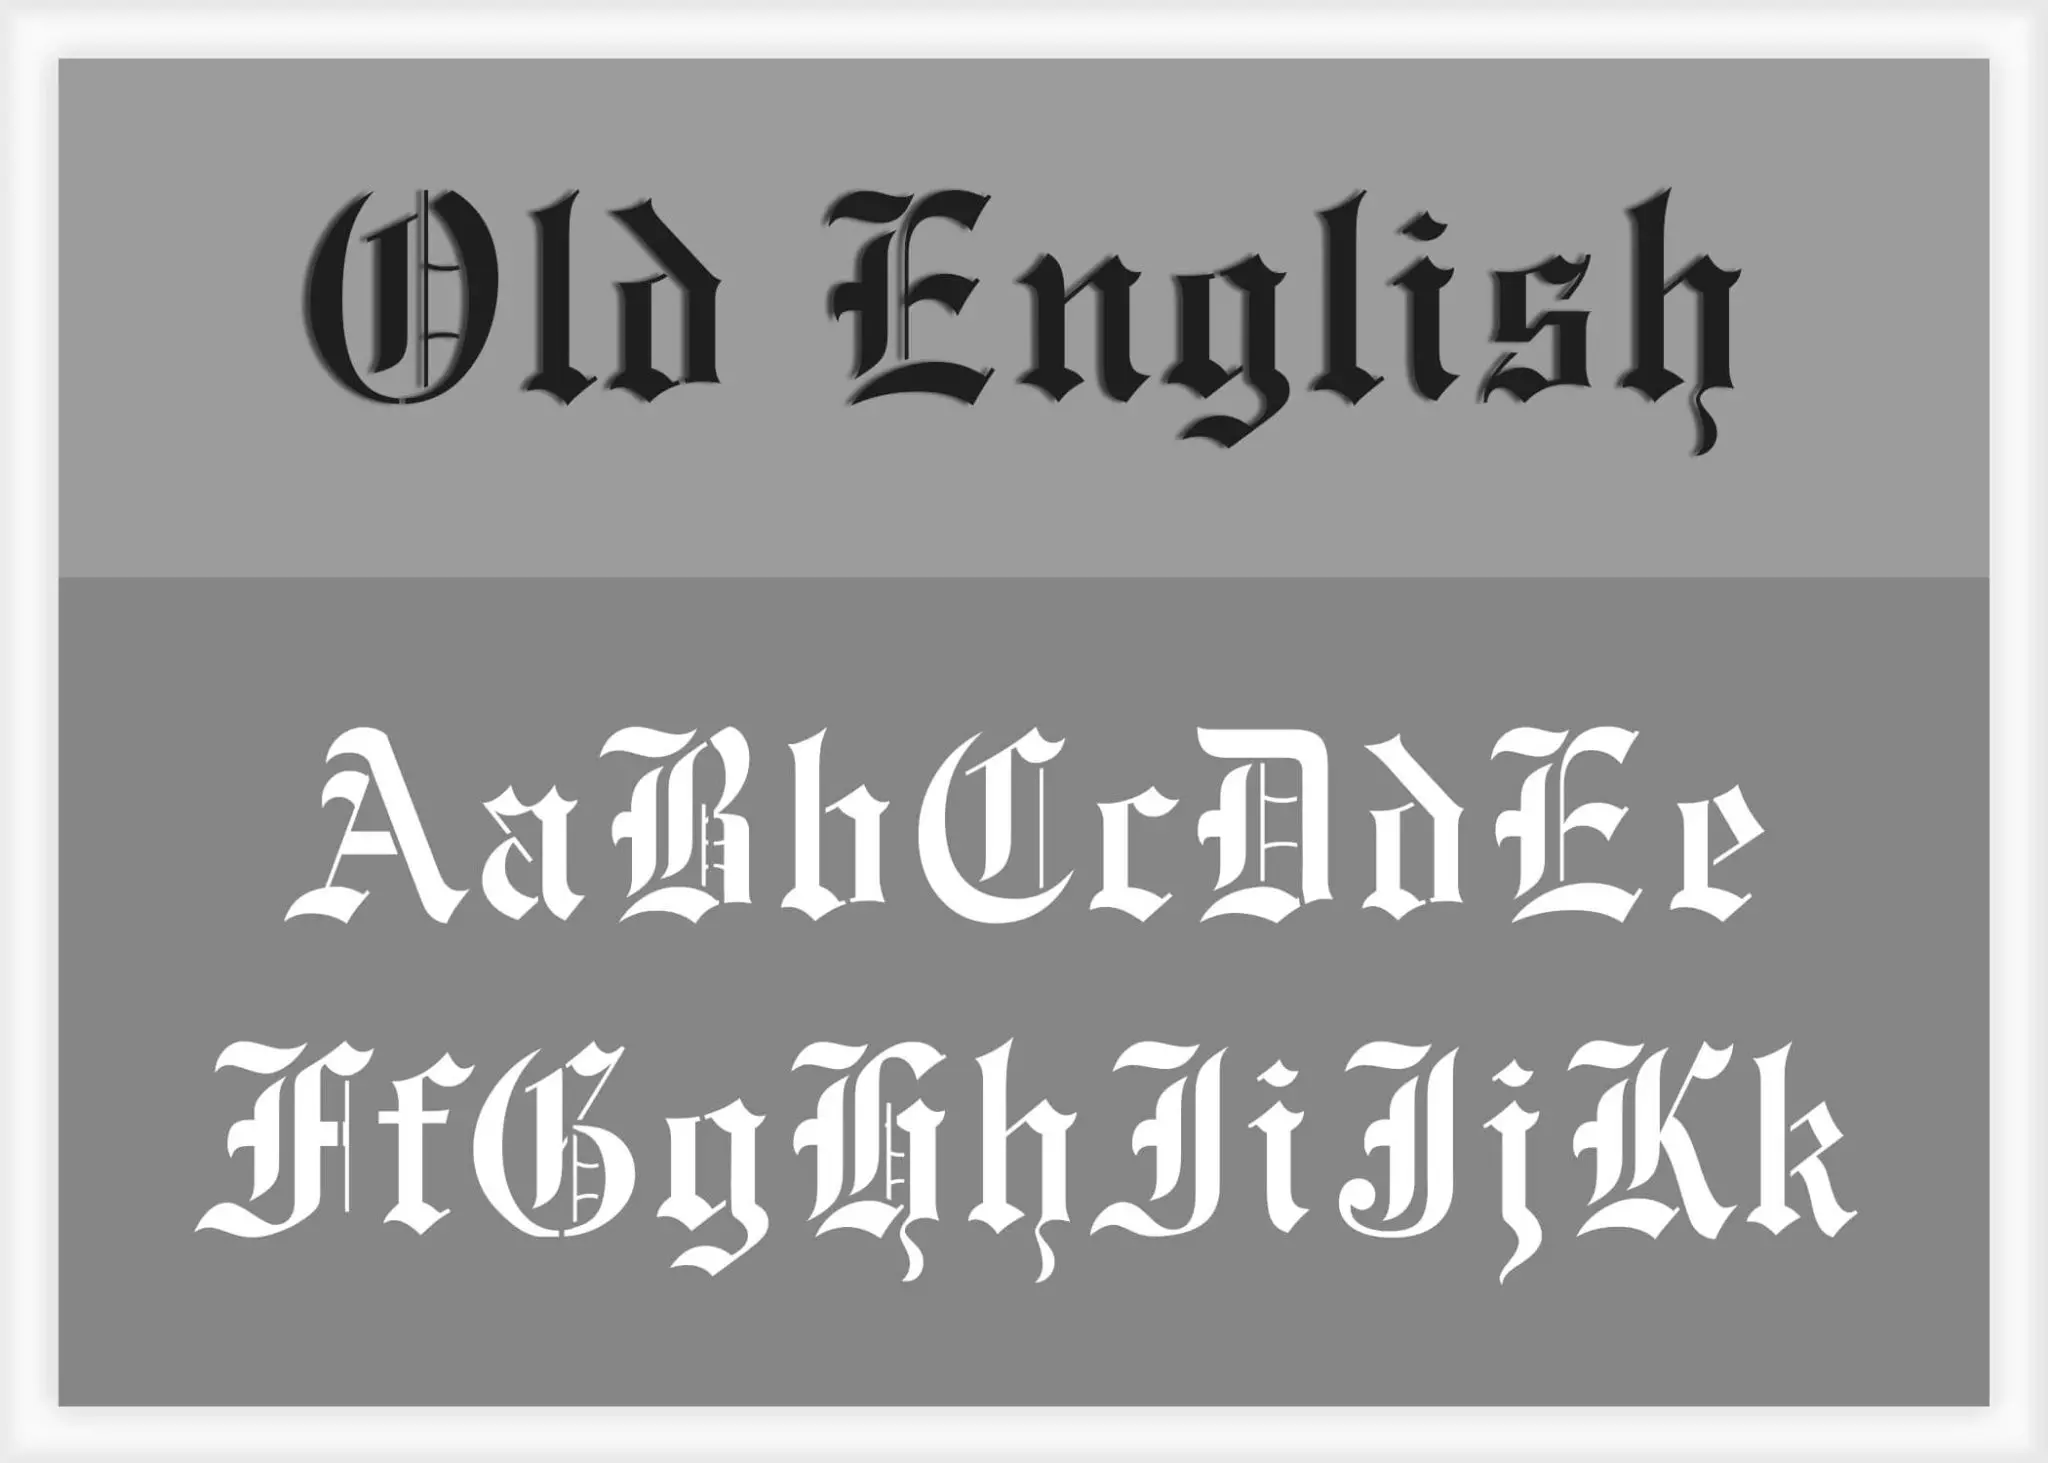 old-english-font-alphabet-stencil-letter-stencils-stencils-online